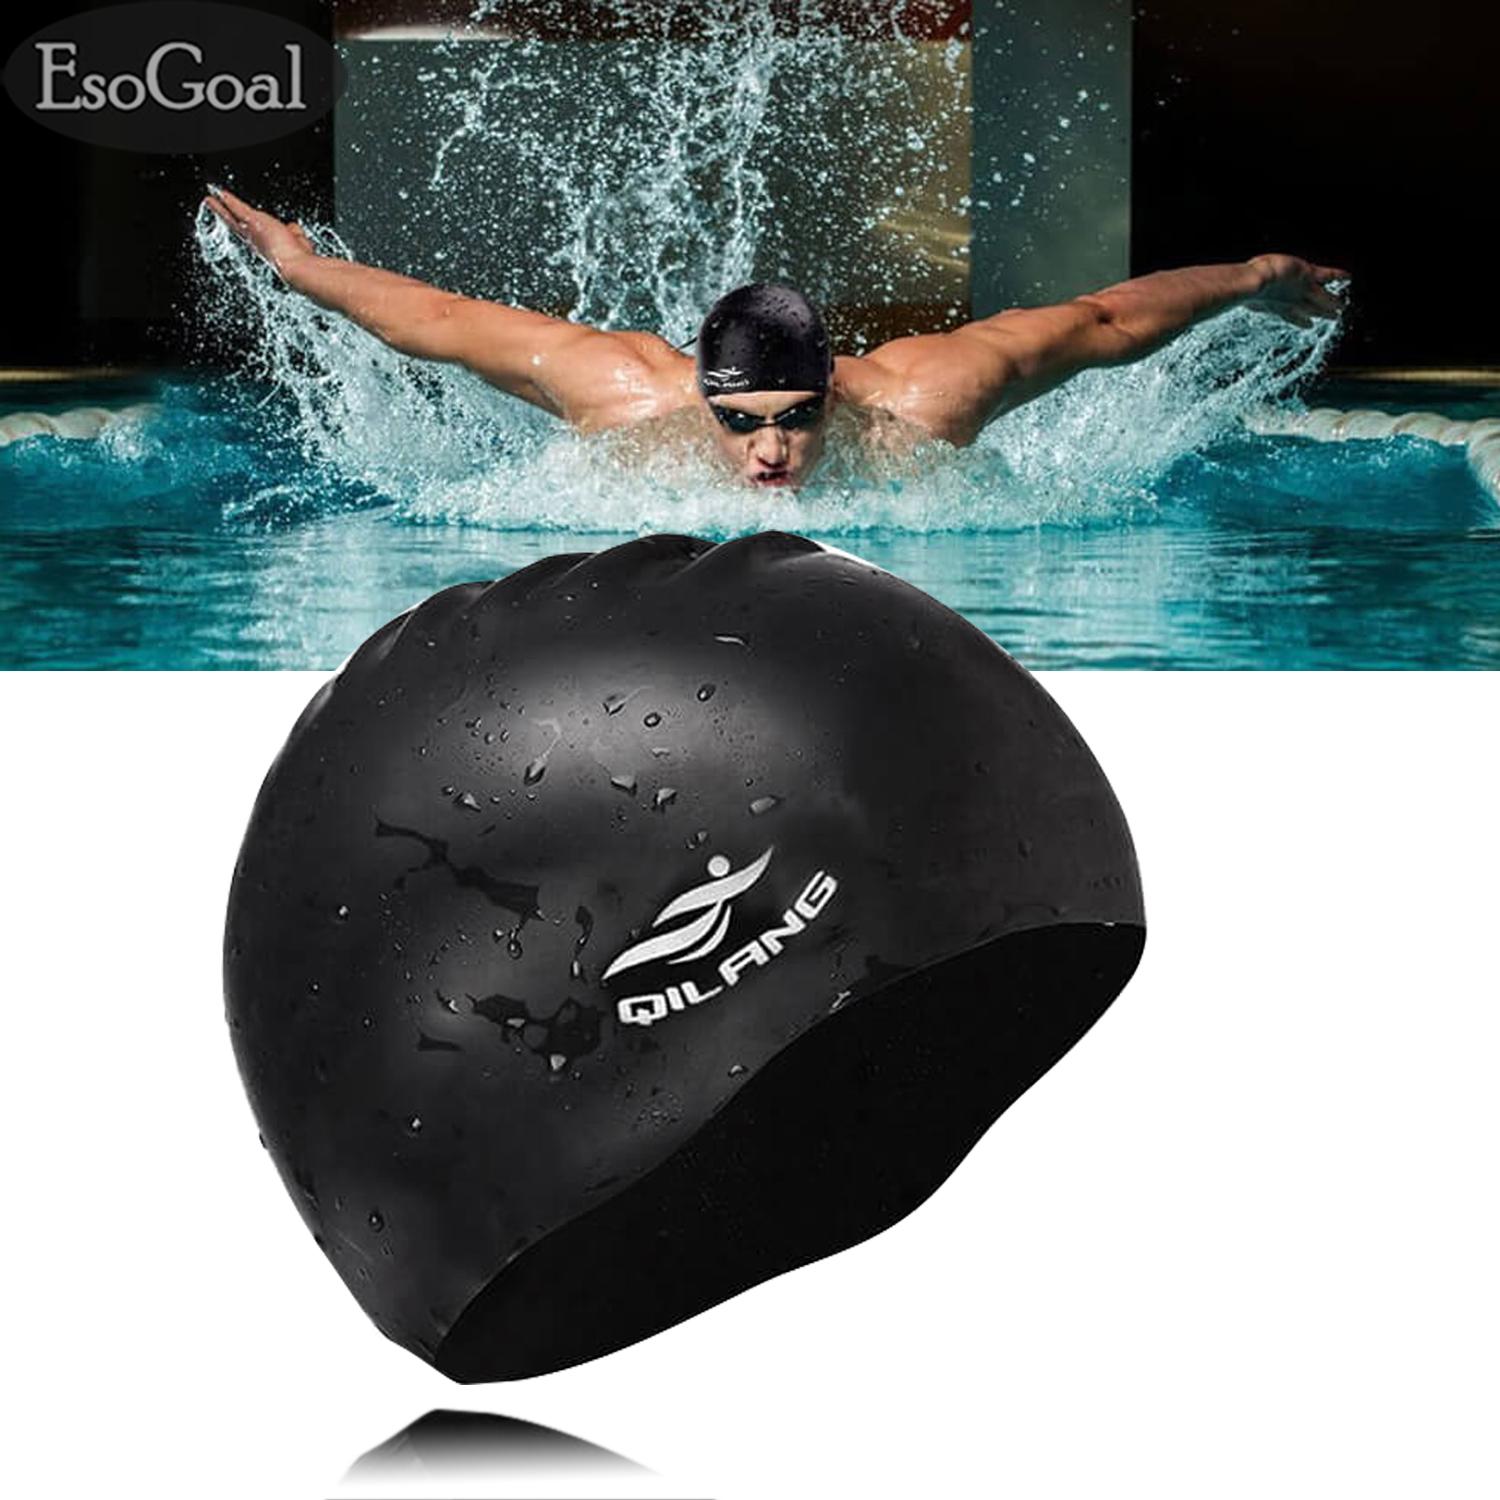 EsoGoal Swim Cap Long Hair Swimming Cap Waterproof Silicone Hat for Adult